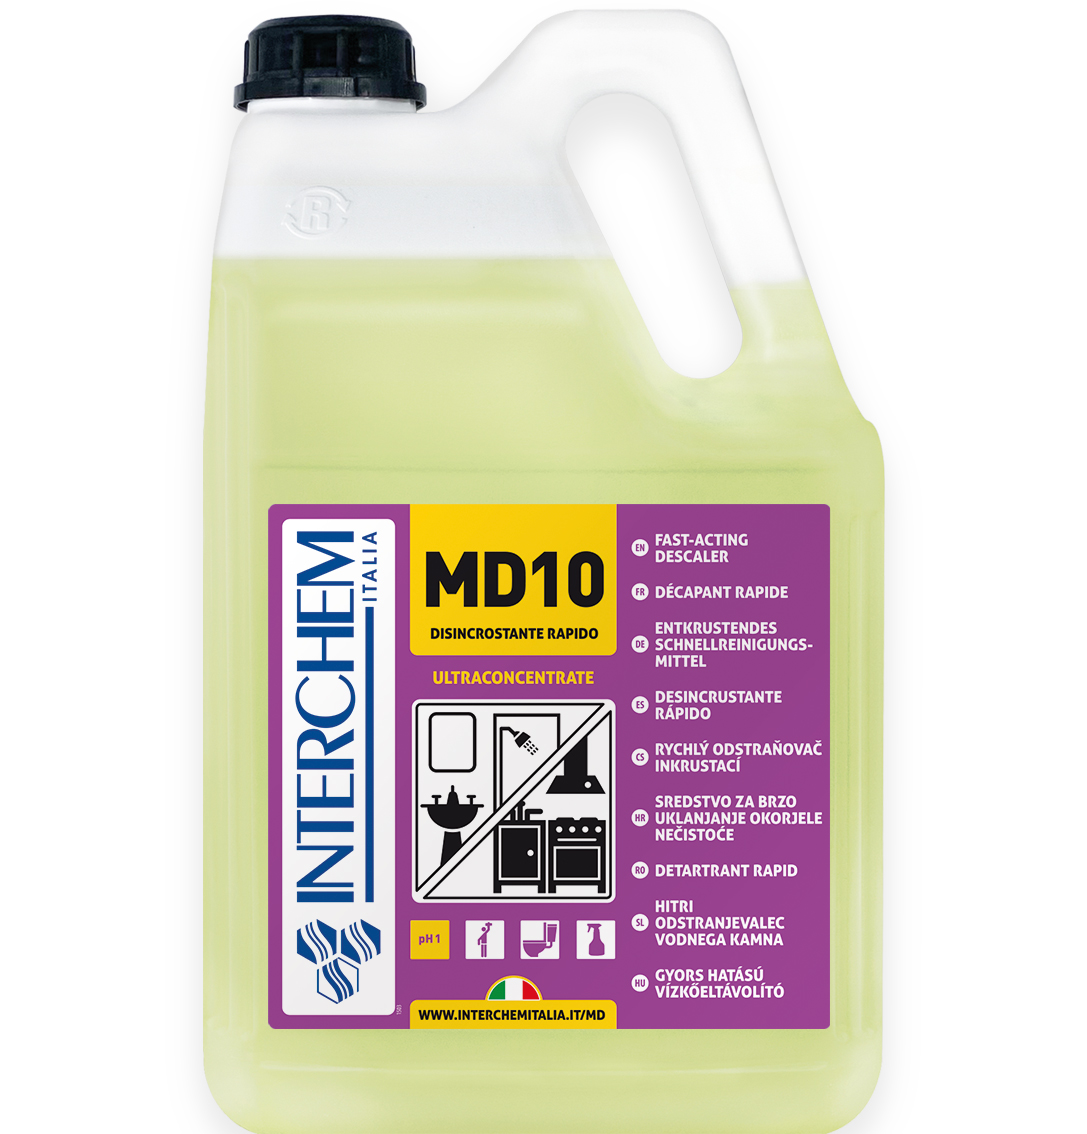 MD10 Detergente disincrostante rapido. Ultraconcentrato lt 5